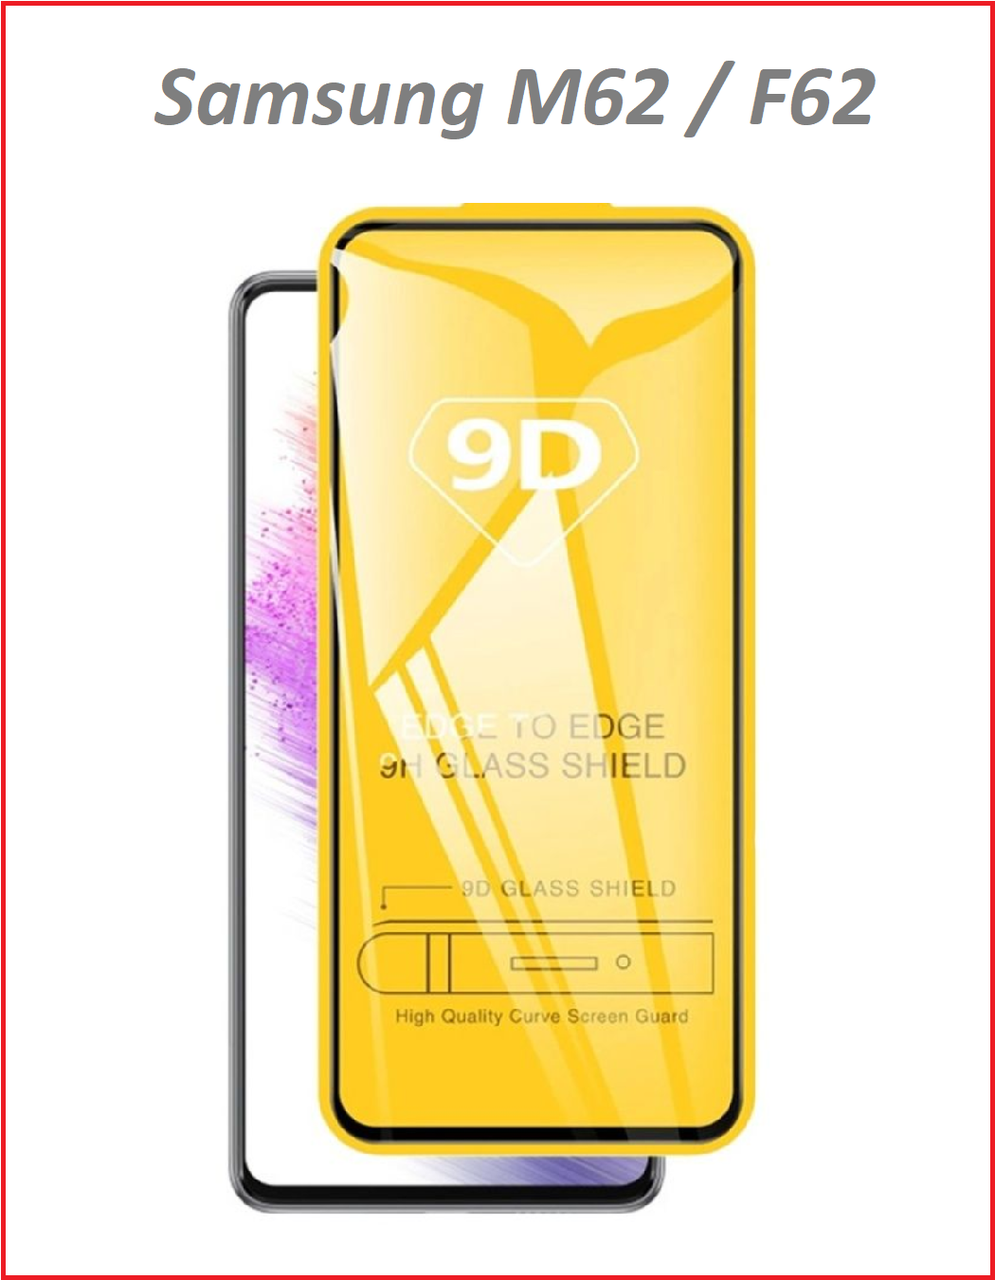 Защитное стекло Full-Screen для Samsung Galaxy M62 черный SM-M625 / F62 (5D-9D с полной проклейкой)